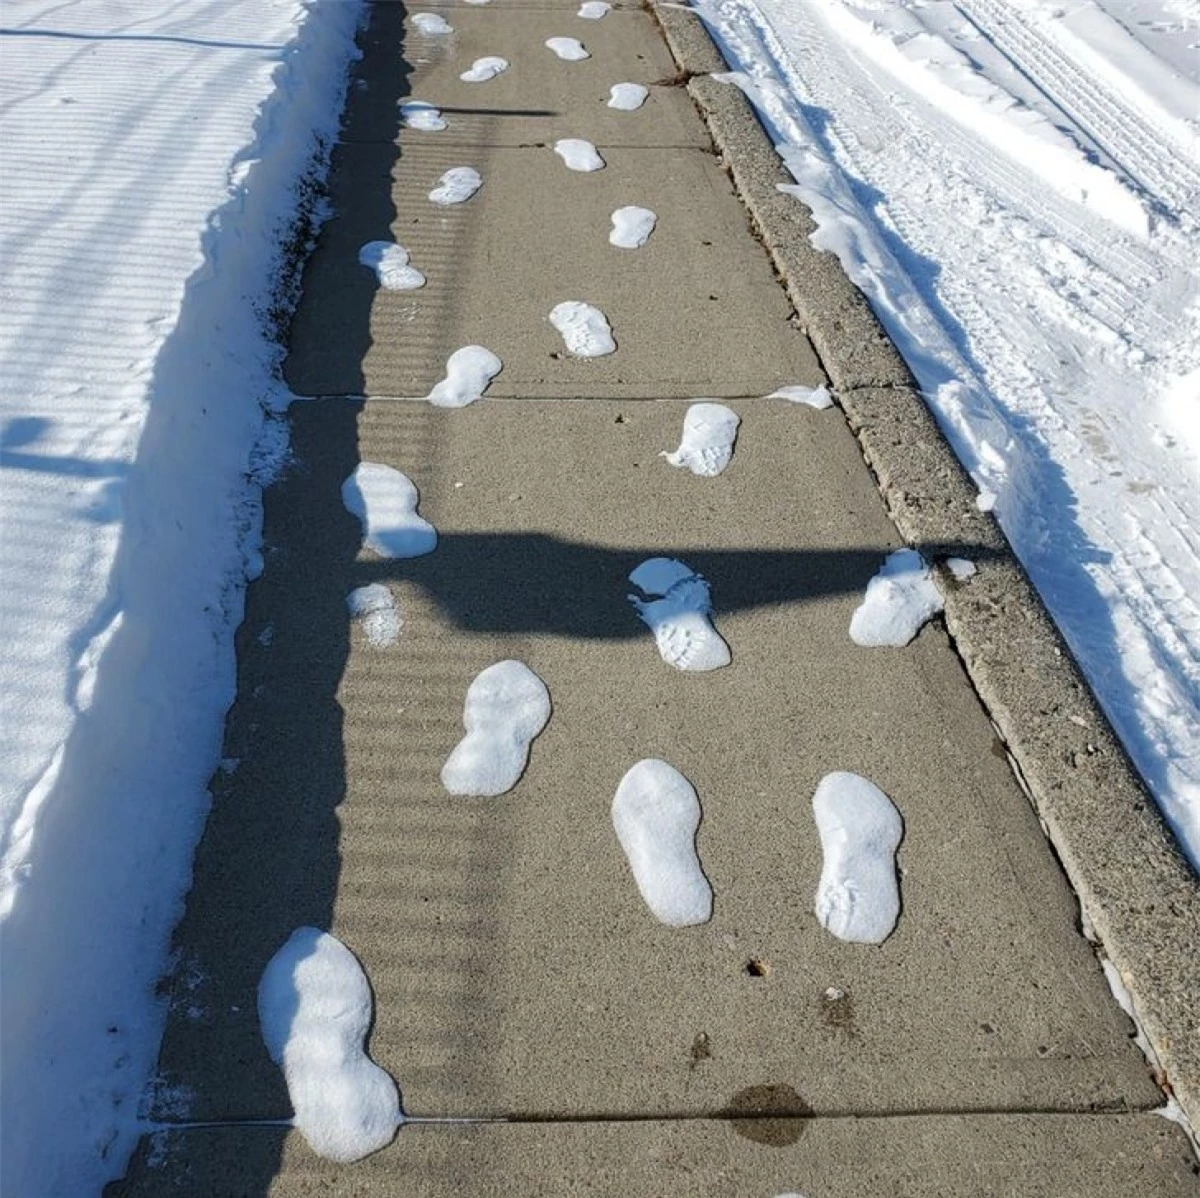 Tuyết tan chảy và chỉ còn lại những vết chân.